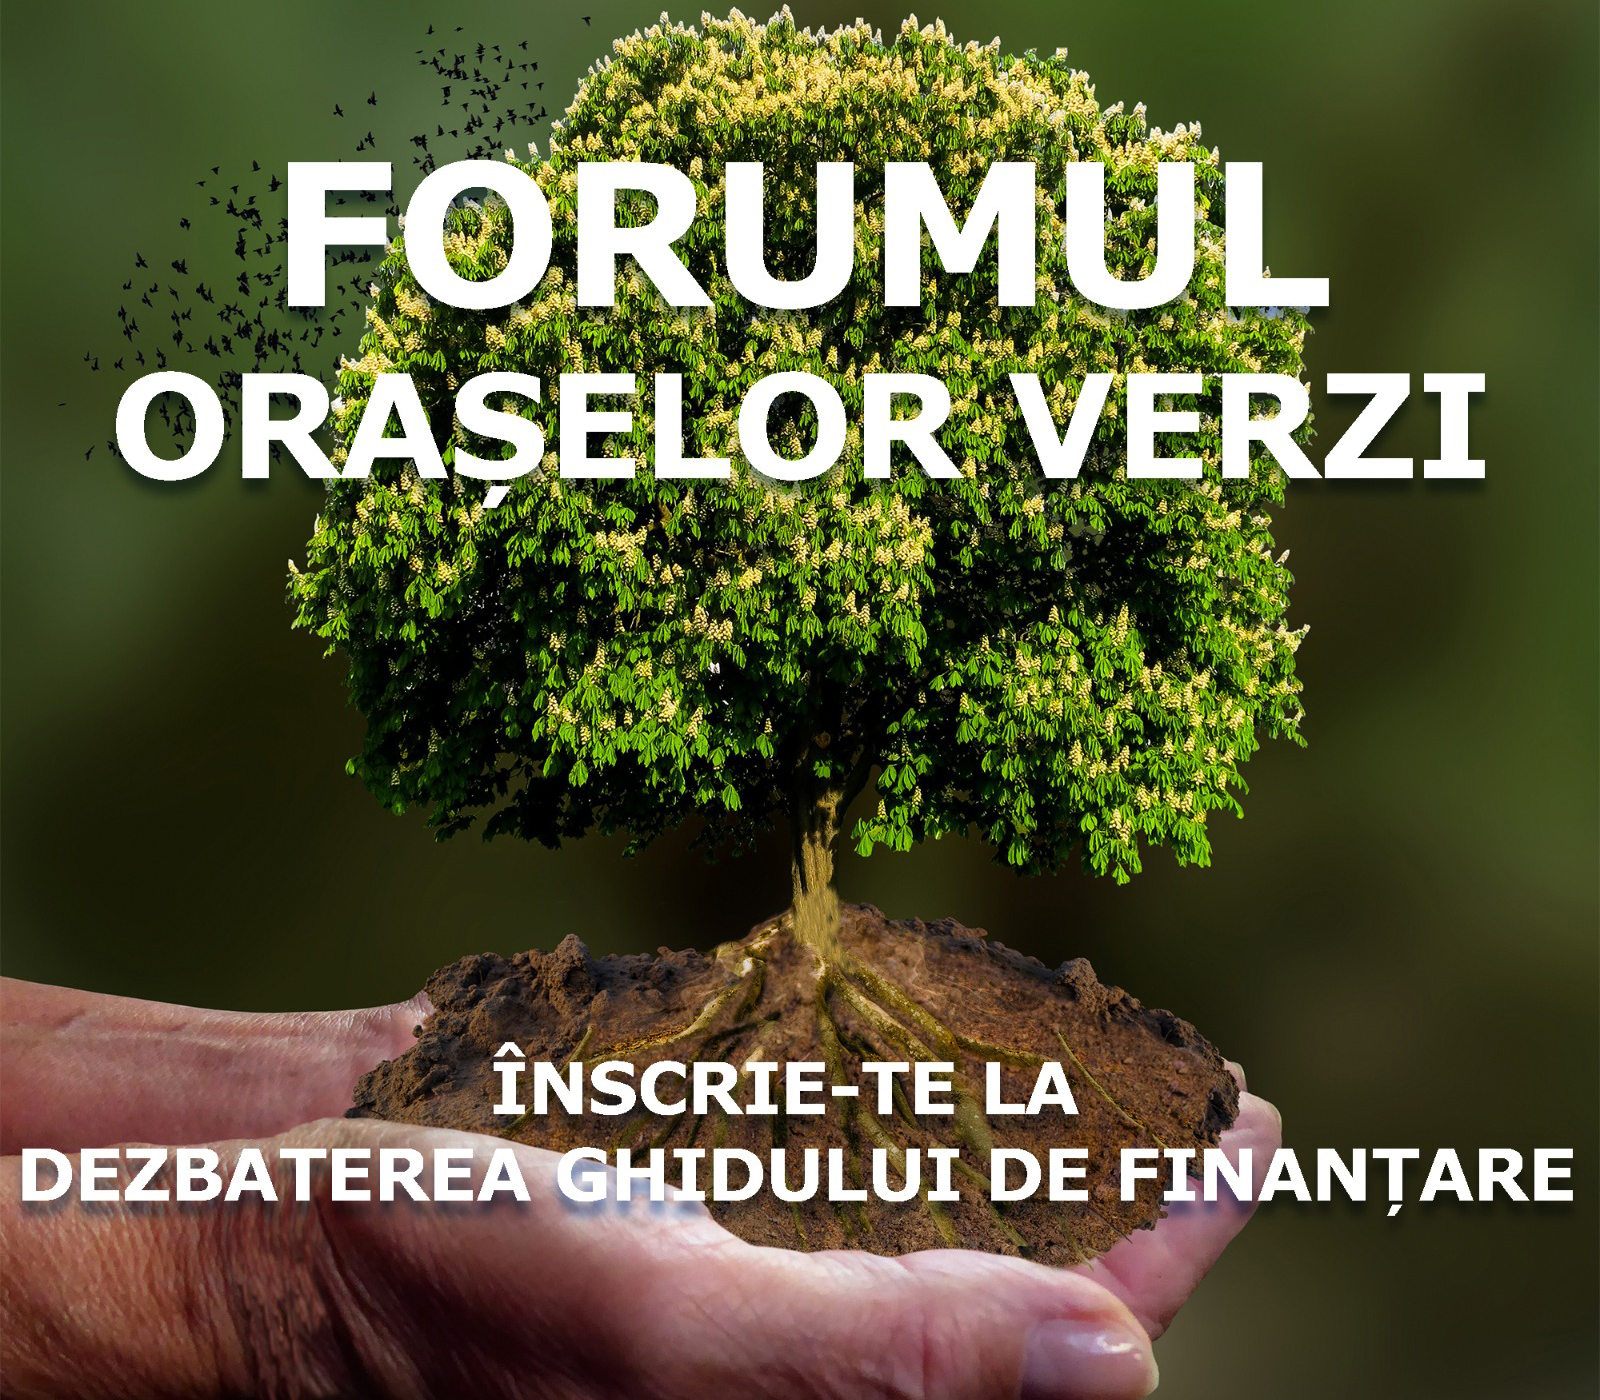 Consultare publică on-line pe Ghidul de finanțare pentru ONG-uri, în cadrul Forumului Orașelor Verzi